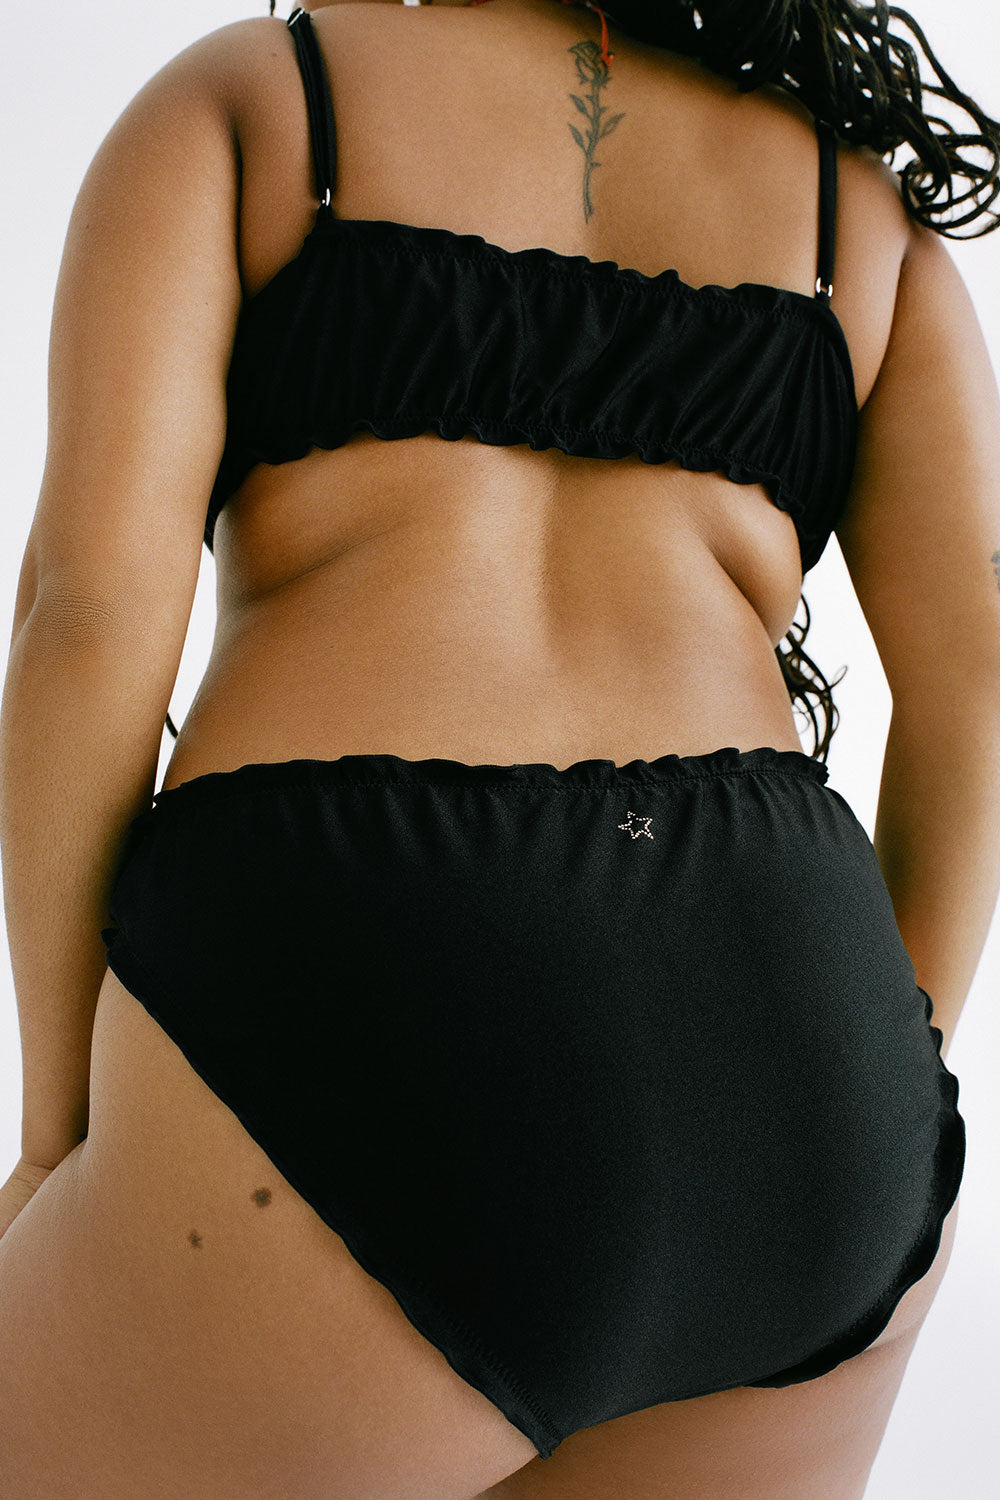 Arabelle Shine Full Coverage Bikini Bottom - Black